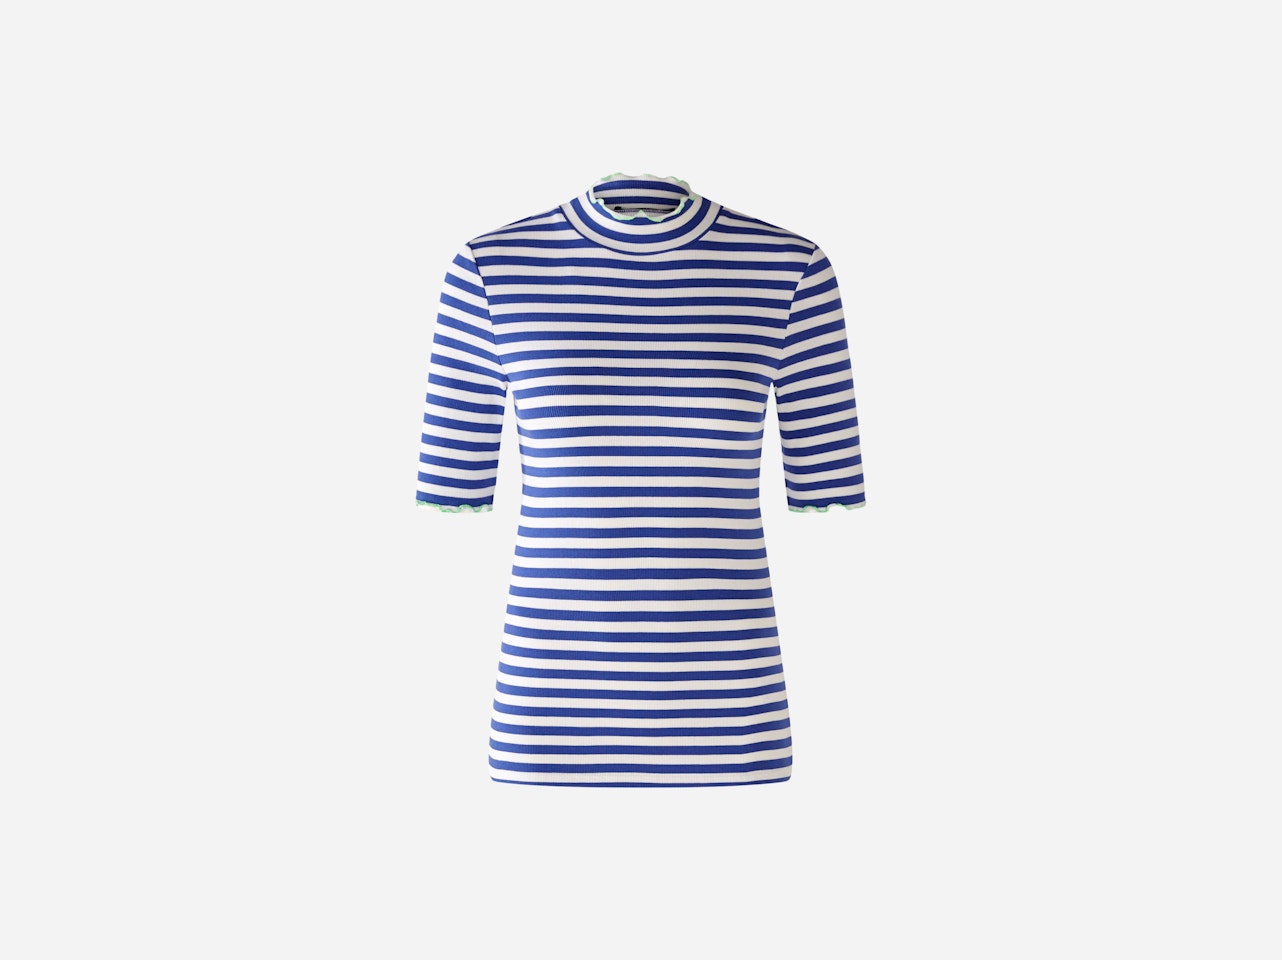 Bild 1 von Stand-up collar shirt elastic cotton in white blue | Oui